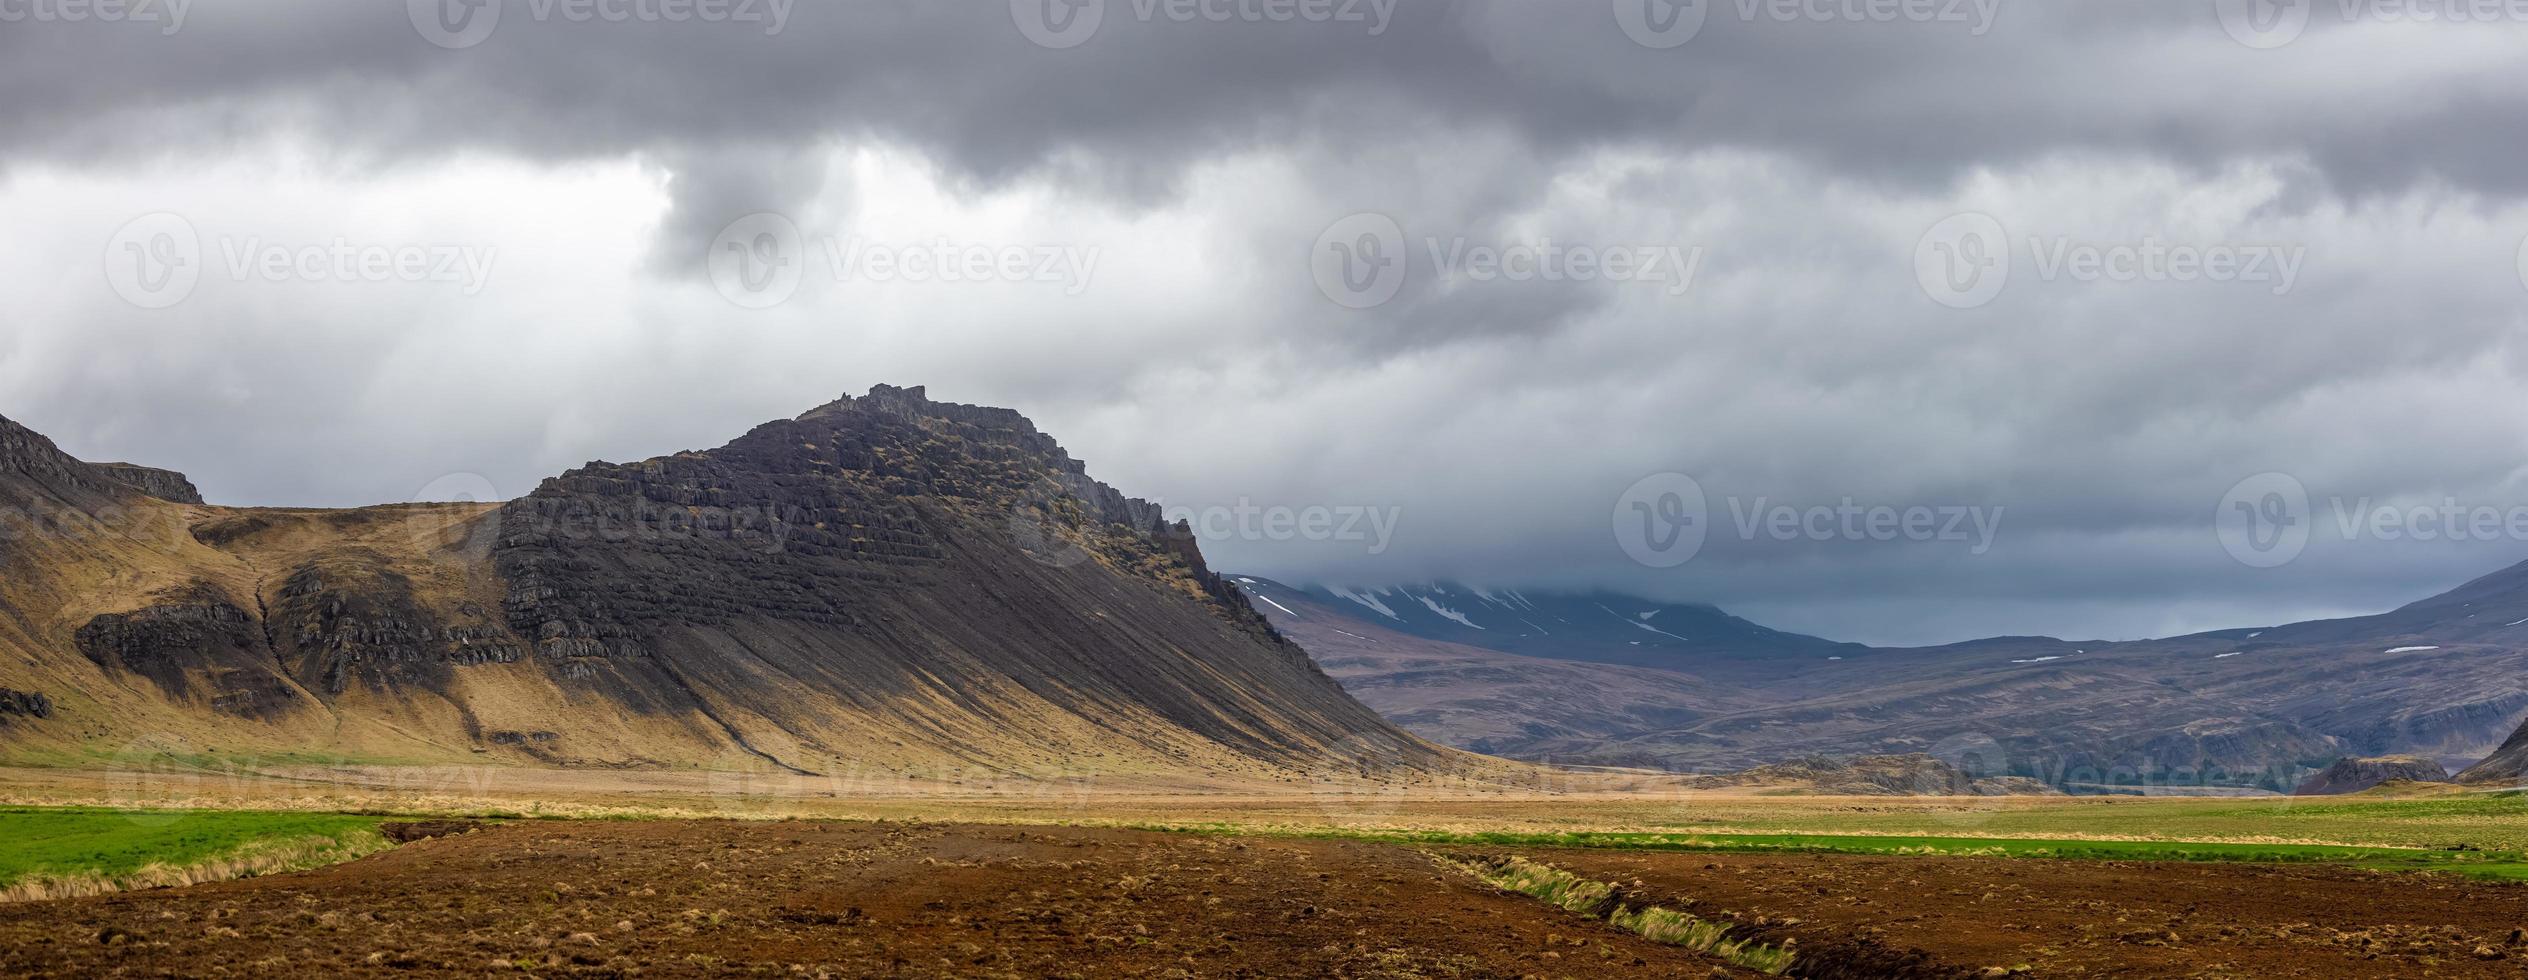 vista panorámica del paisaje montañoso con nubes oscuras en el campo de islandia. foto